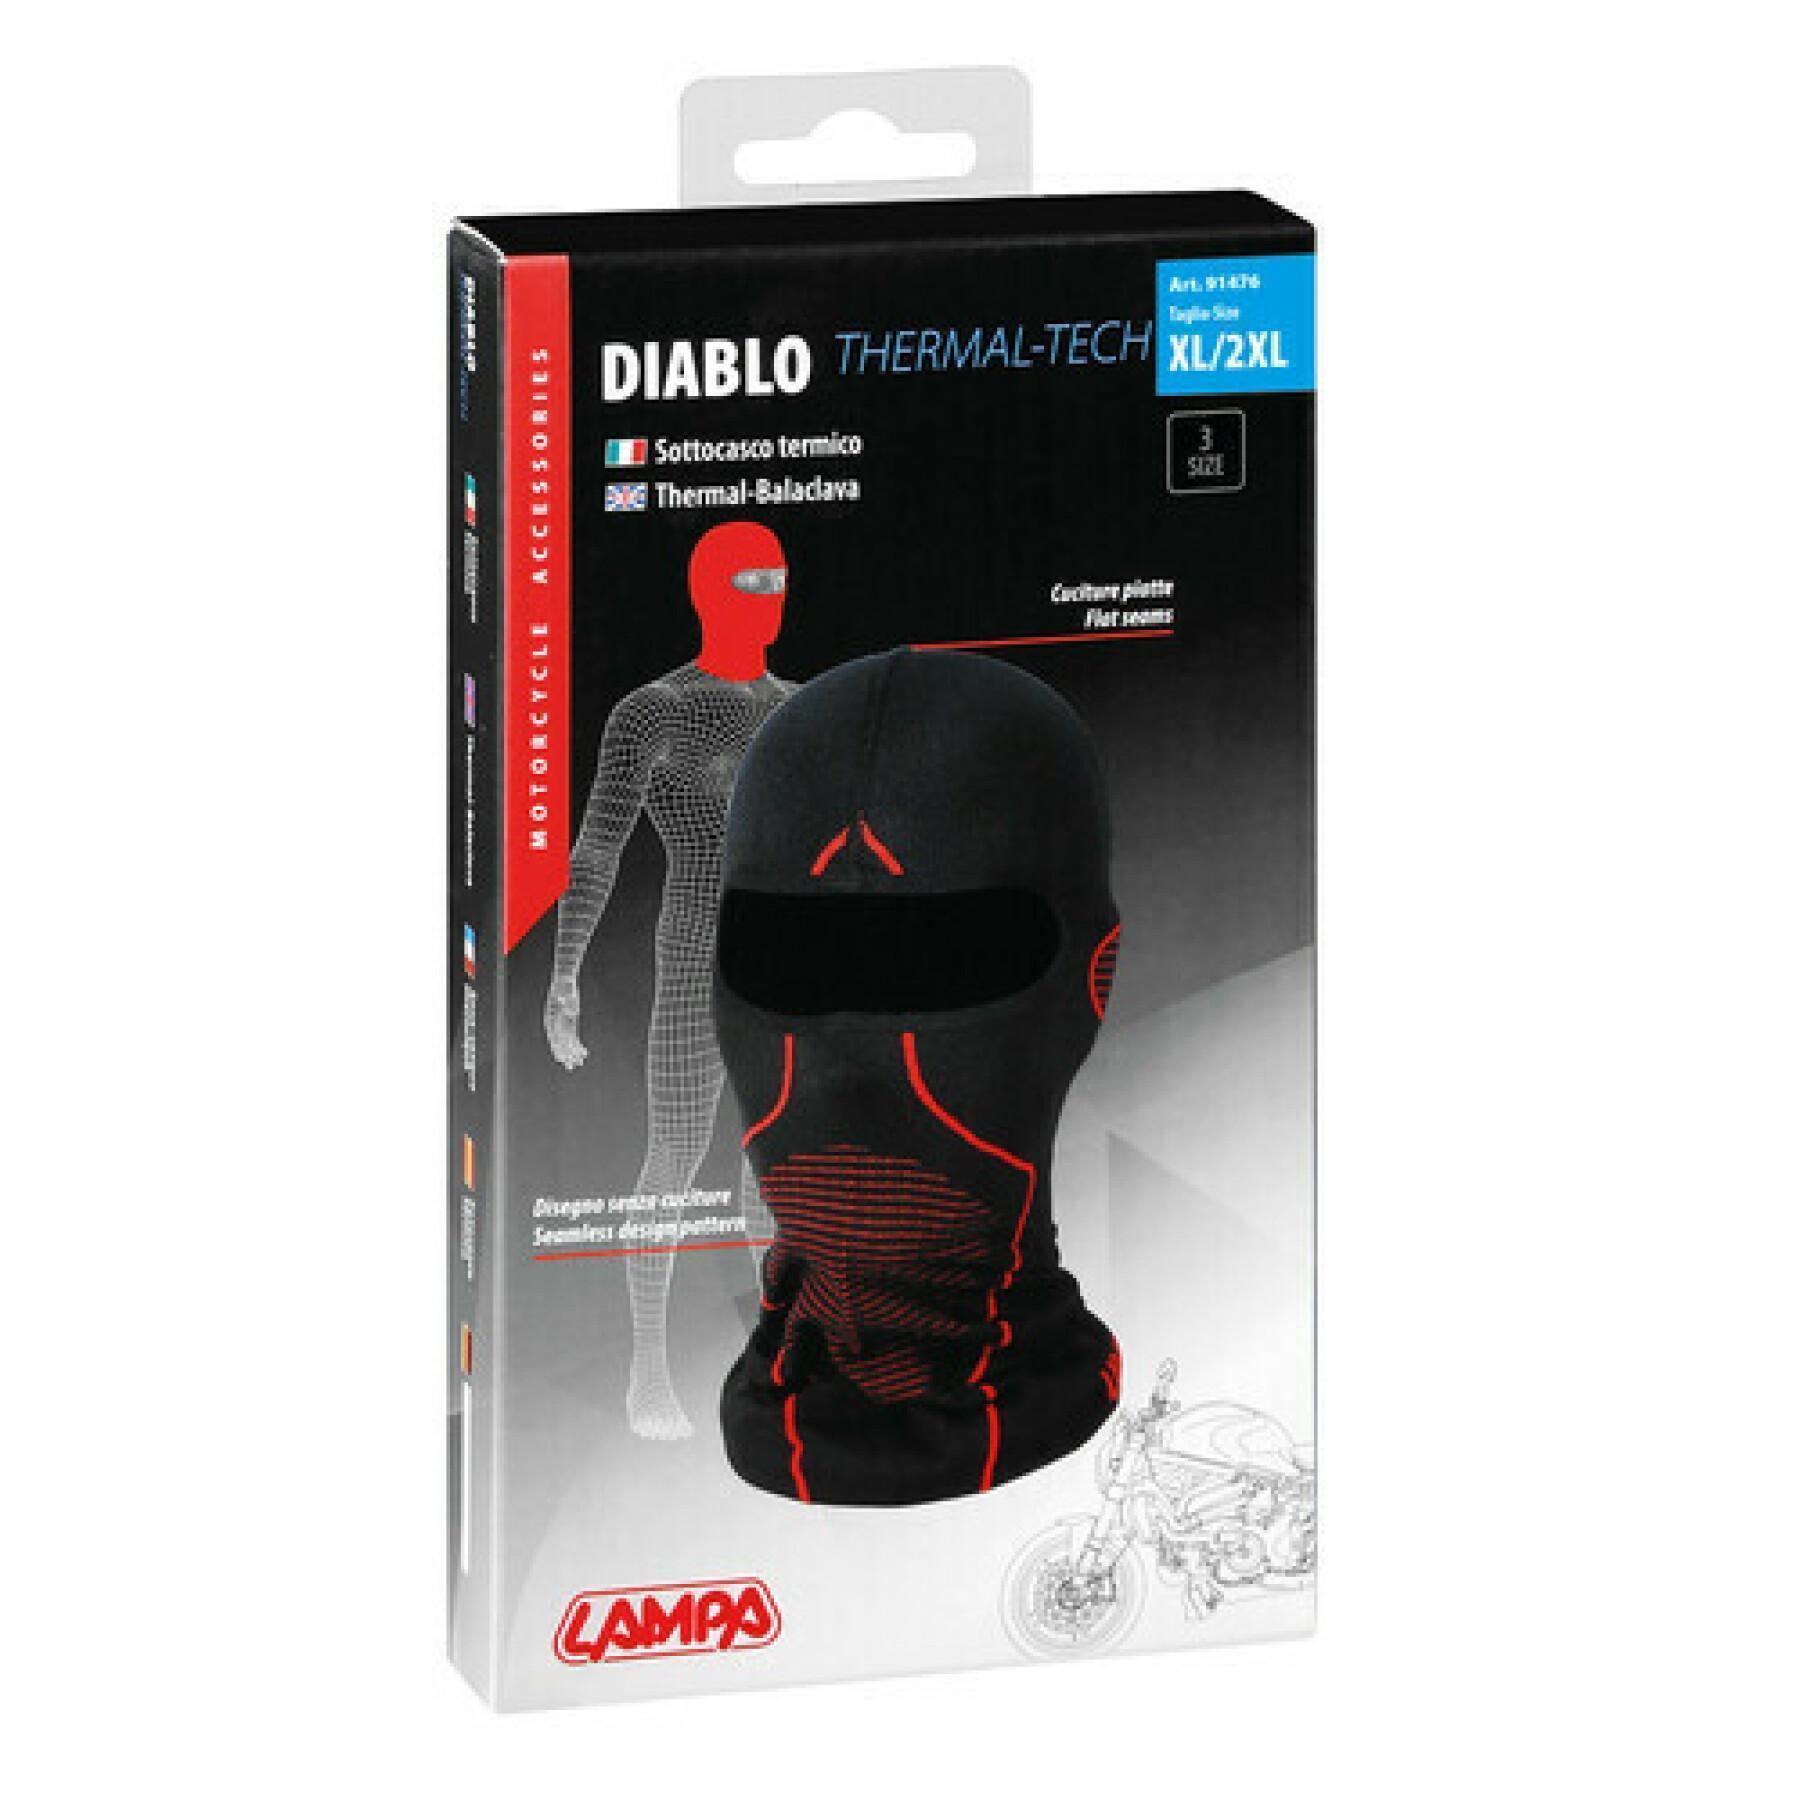 Termisk hjälm för motorcykel Lampa Diablo - 53-56 cm